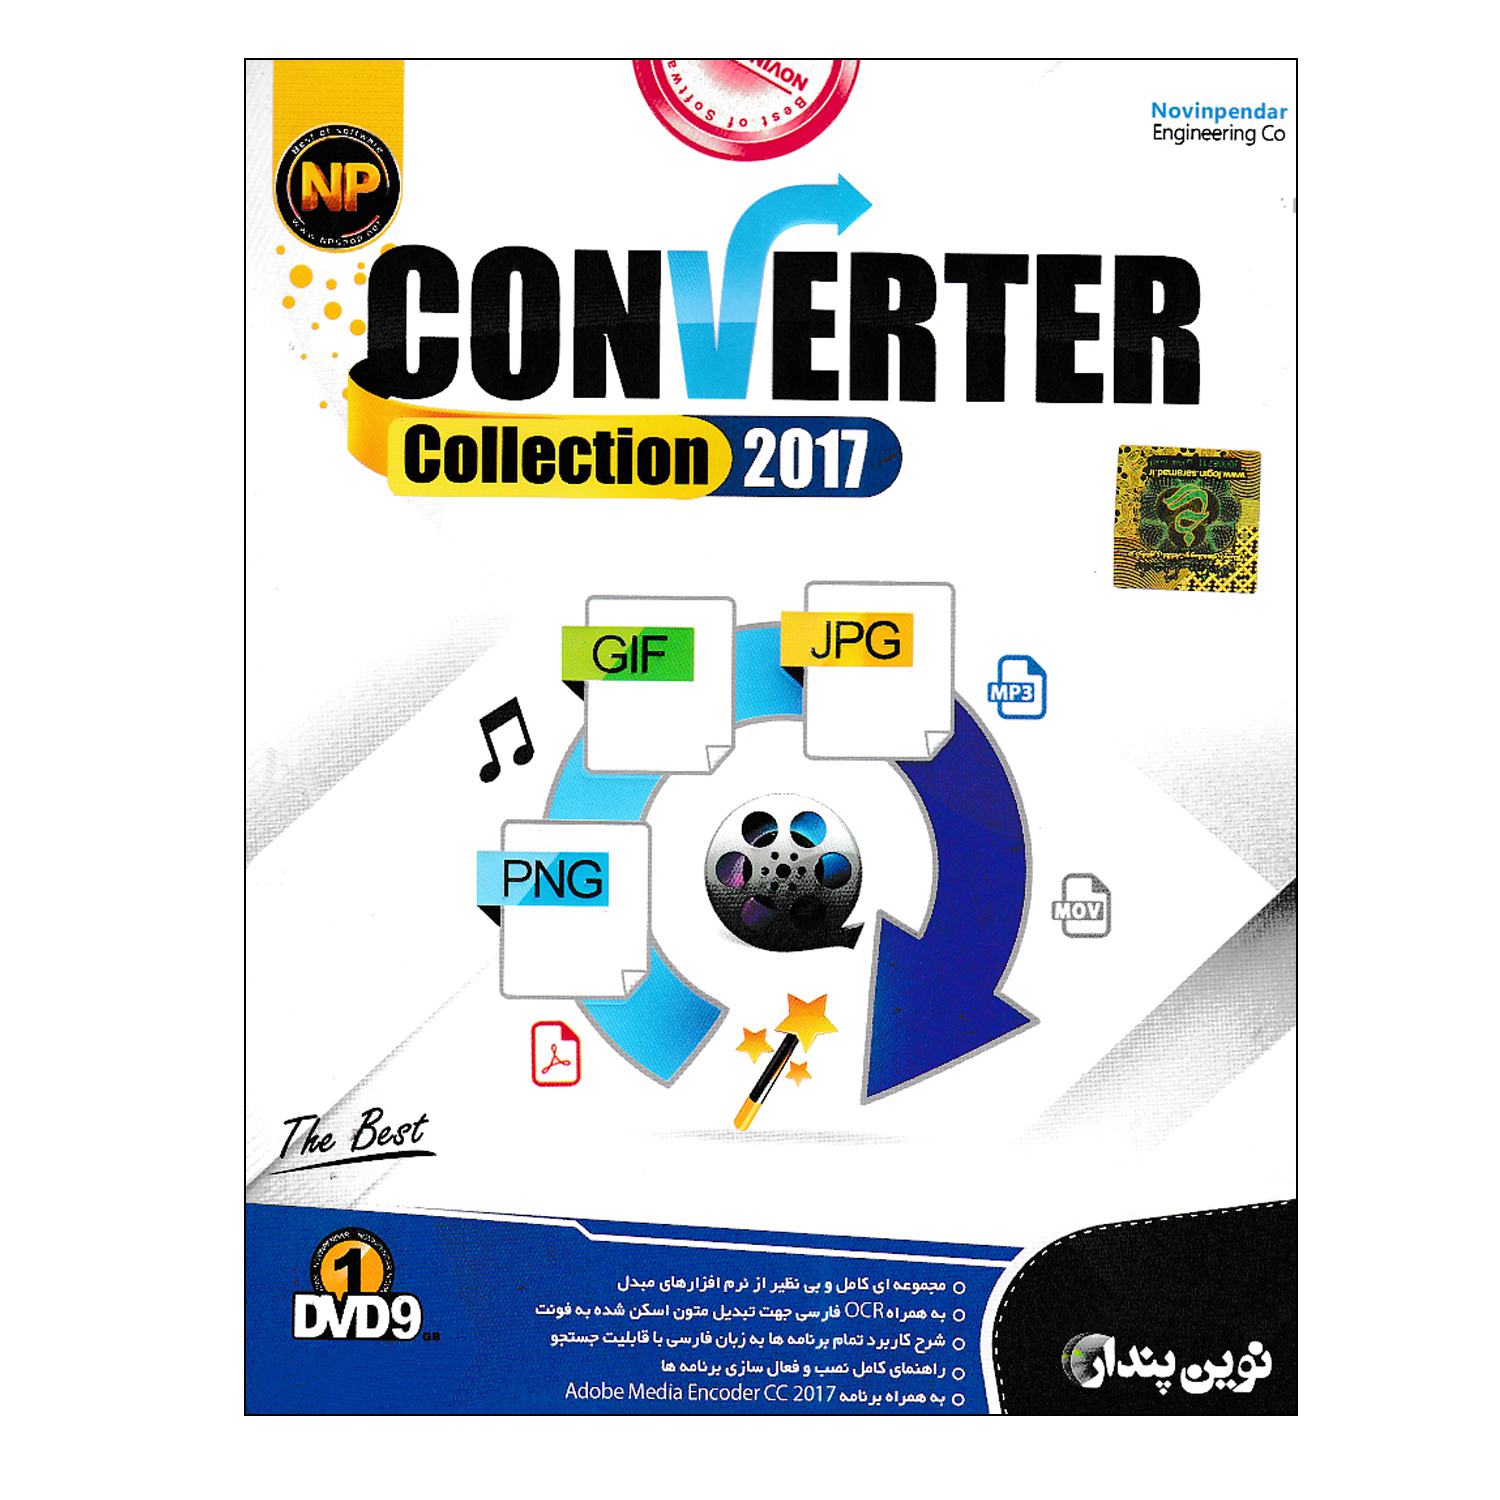 مجموعه نرم افزار Converte Collection 2017 نشر نوین پندار